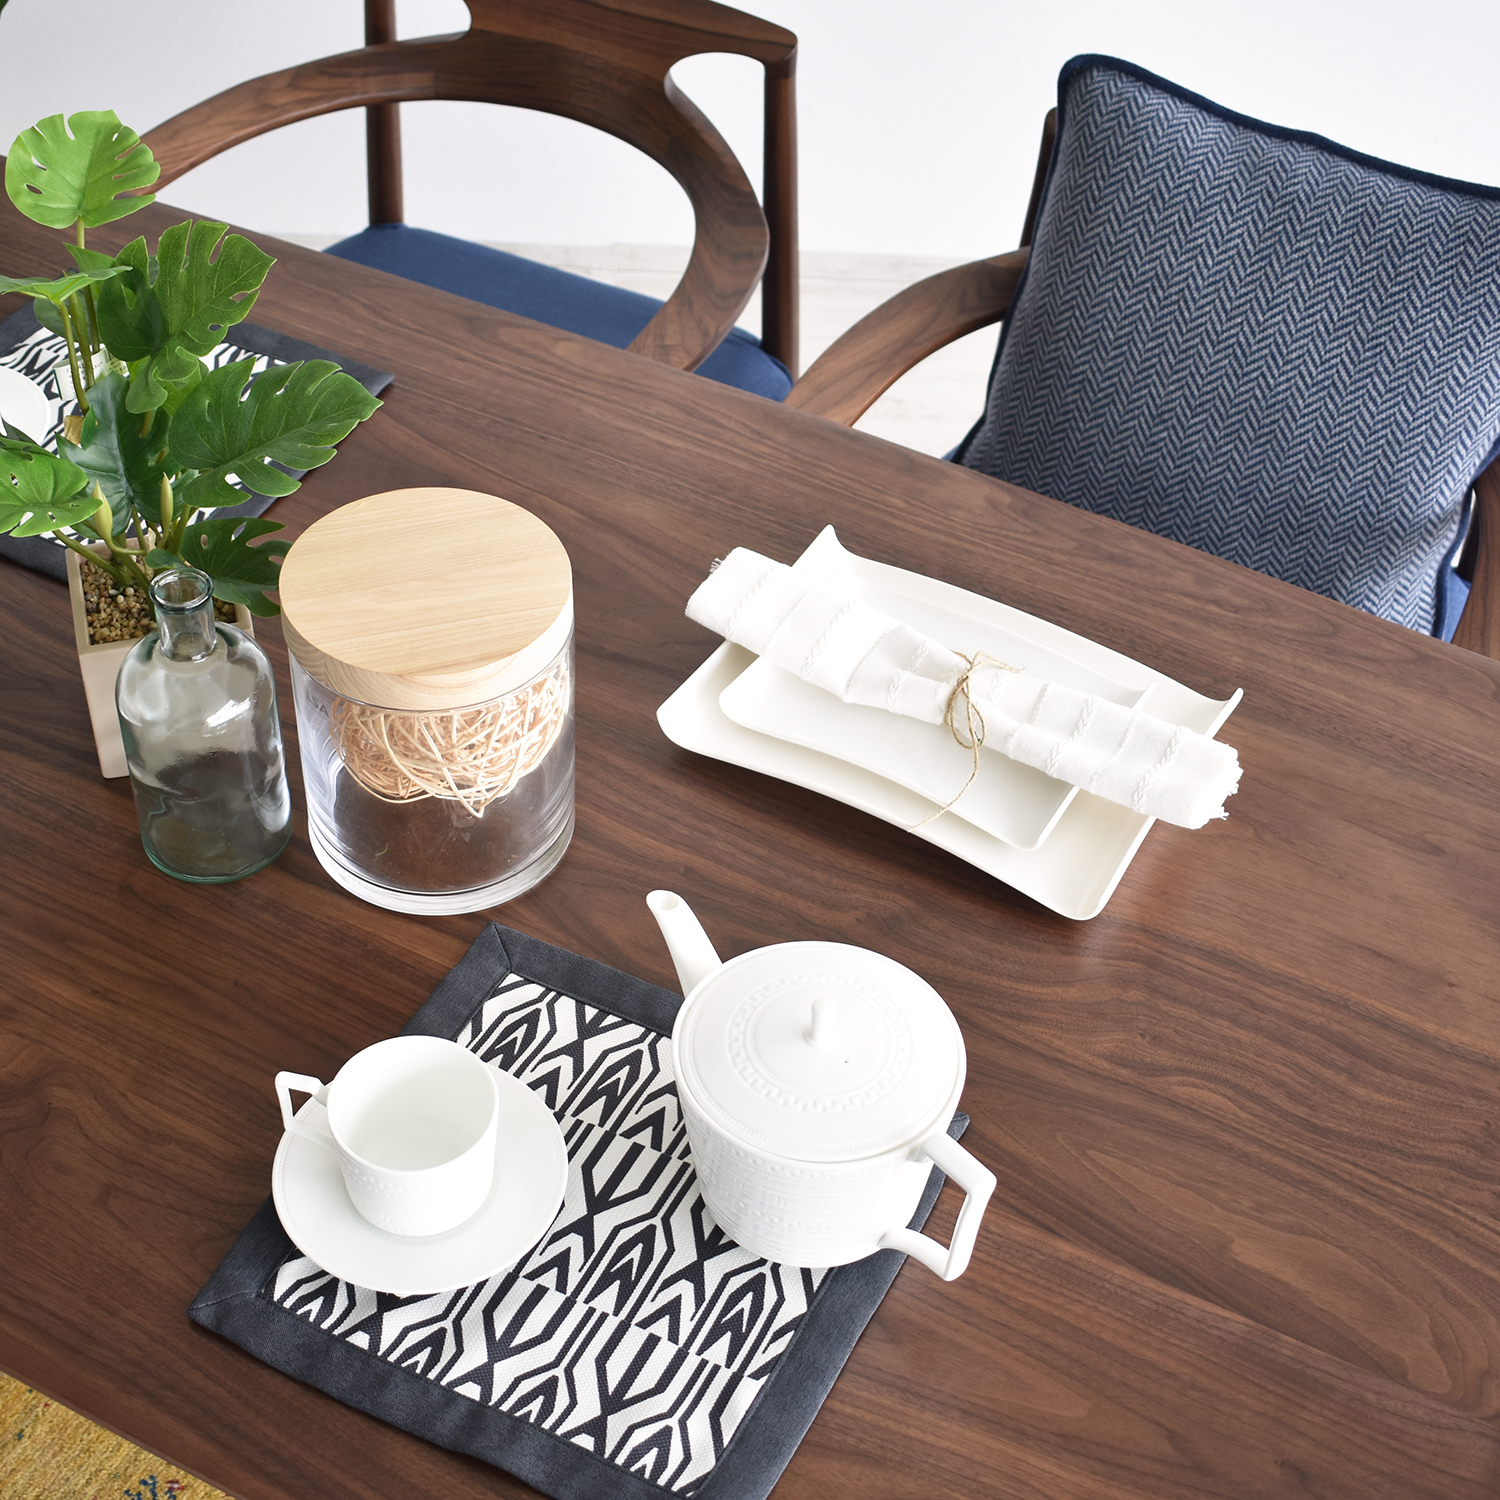 起立木工　テーブル「ラディウス」ウォールナット材 セラウッド塗装 全4サイズ